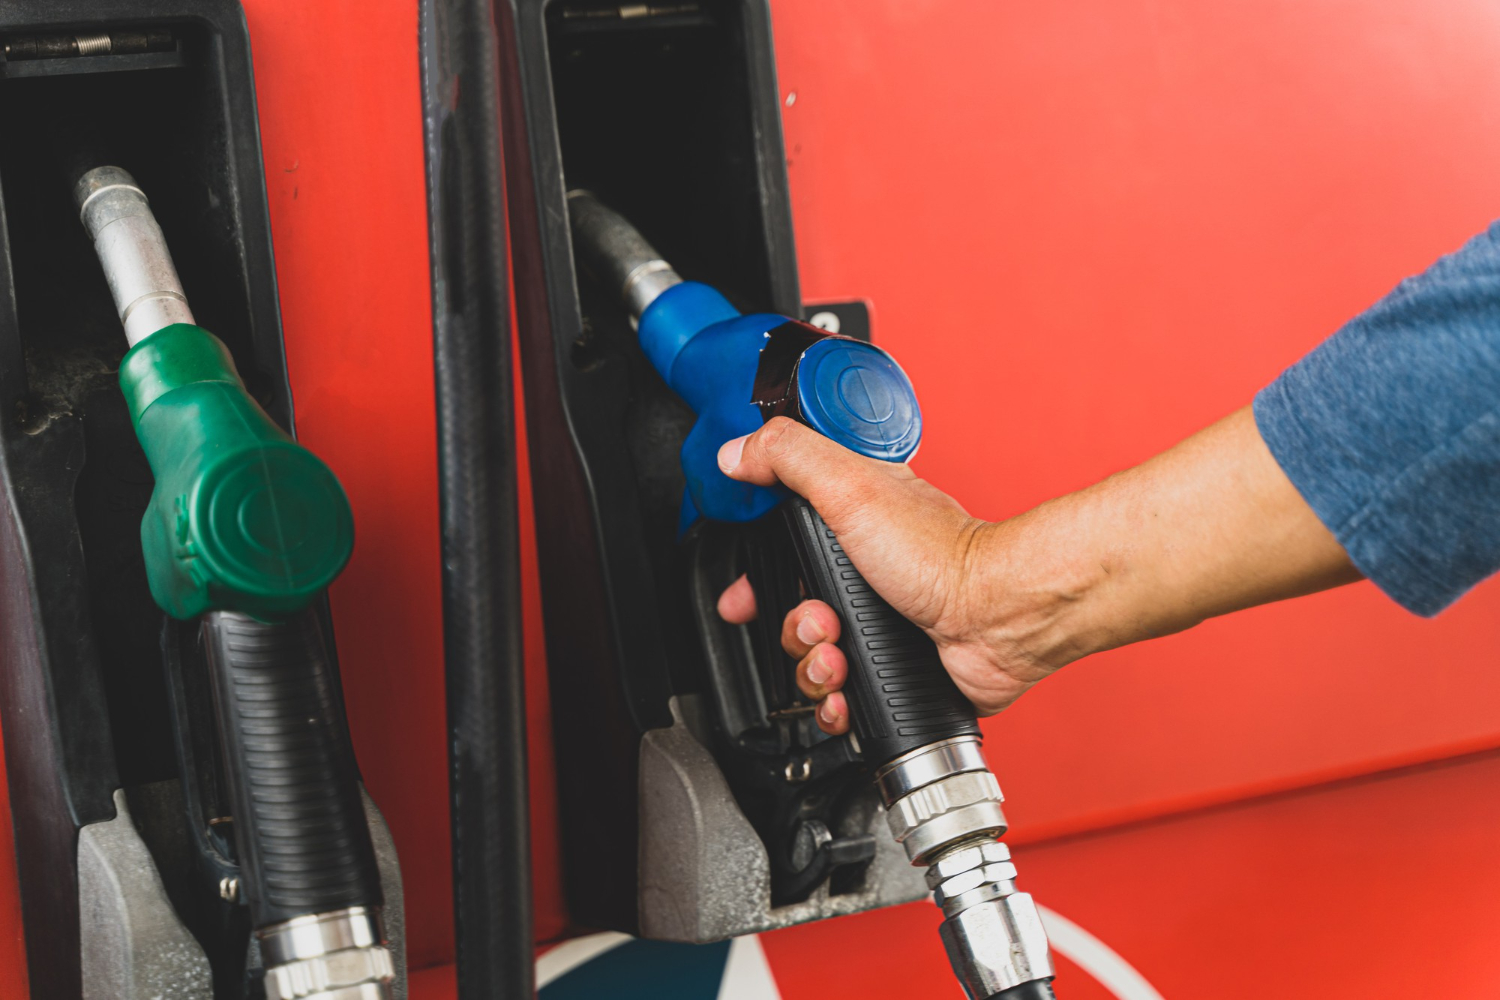 hand-holding-fuel-dispenser-gasoline-pump-concept-transportation-fuel-gasoline-oil.jpg